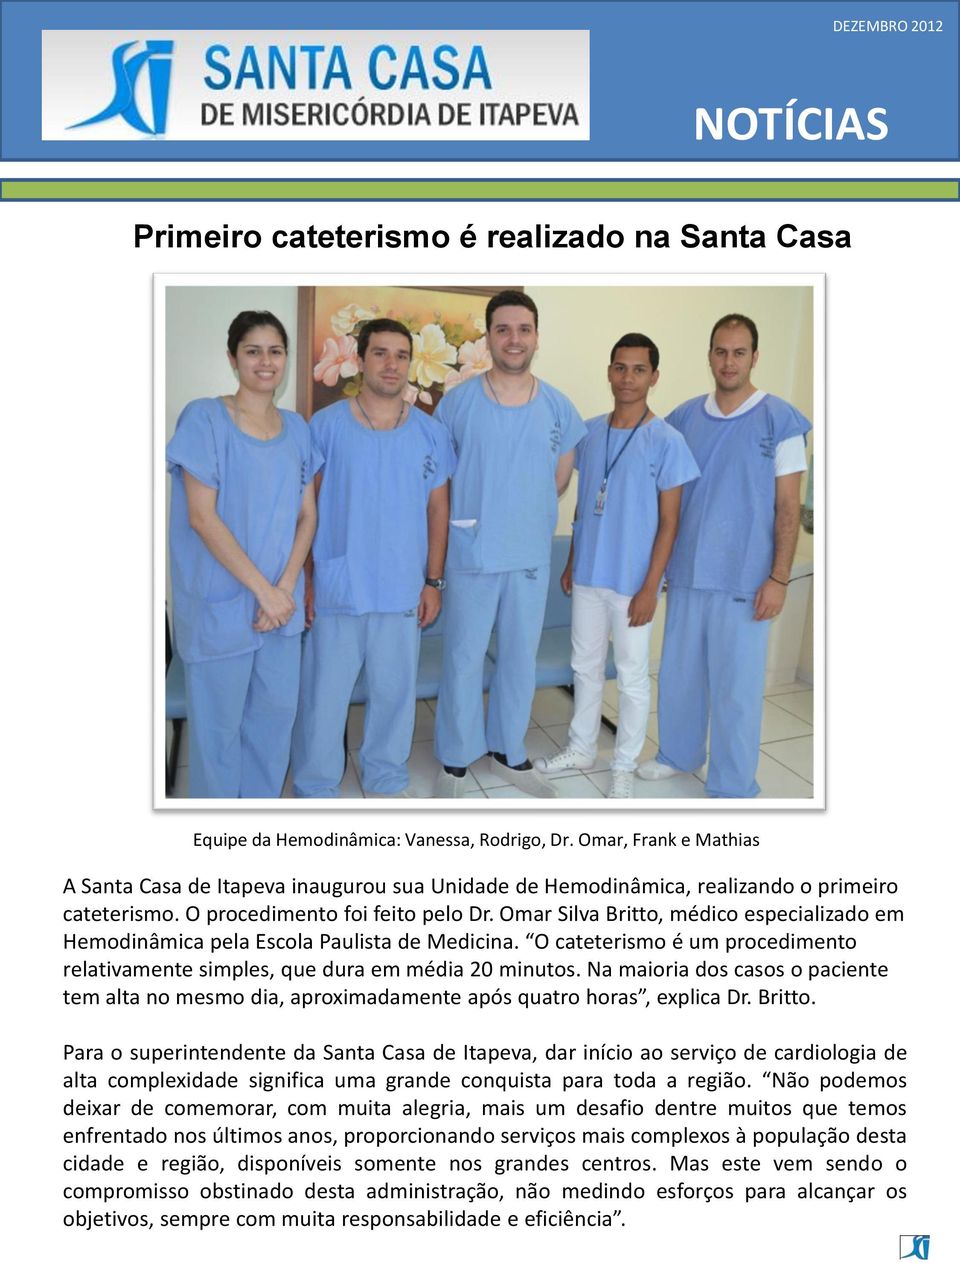 Omar Silva Britto, médico especializado em Hemodinâmica pela Escola Paulista de Medicina. O cateterismo é um procedimento relativamente simples, que dura em média 20 minutos.